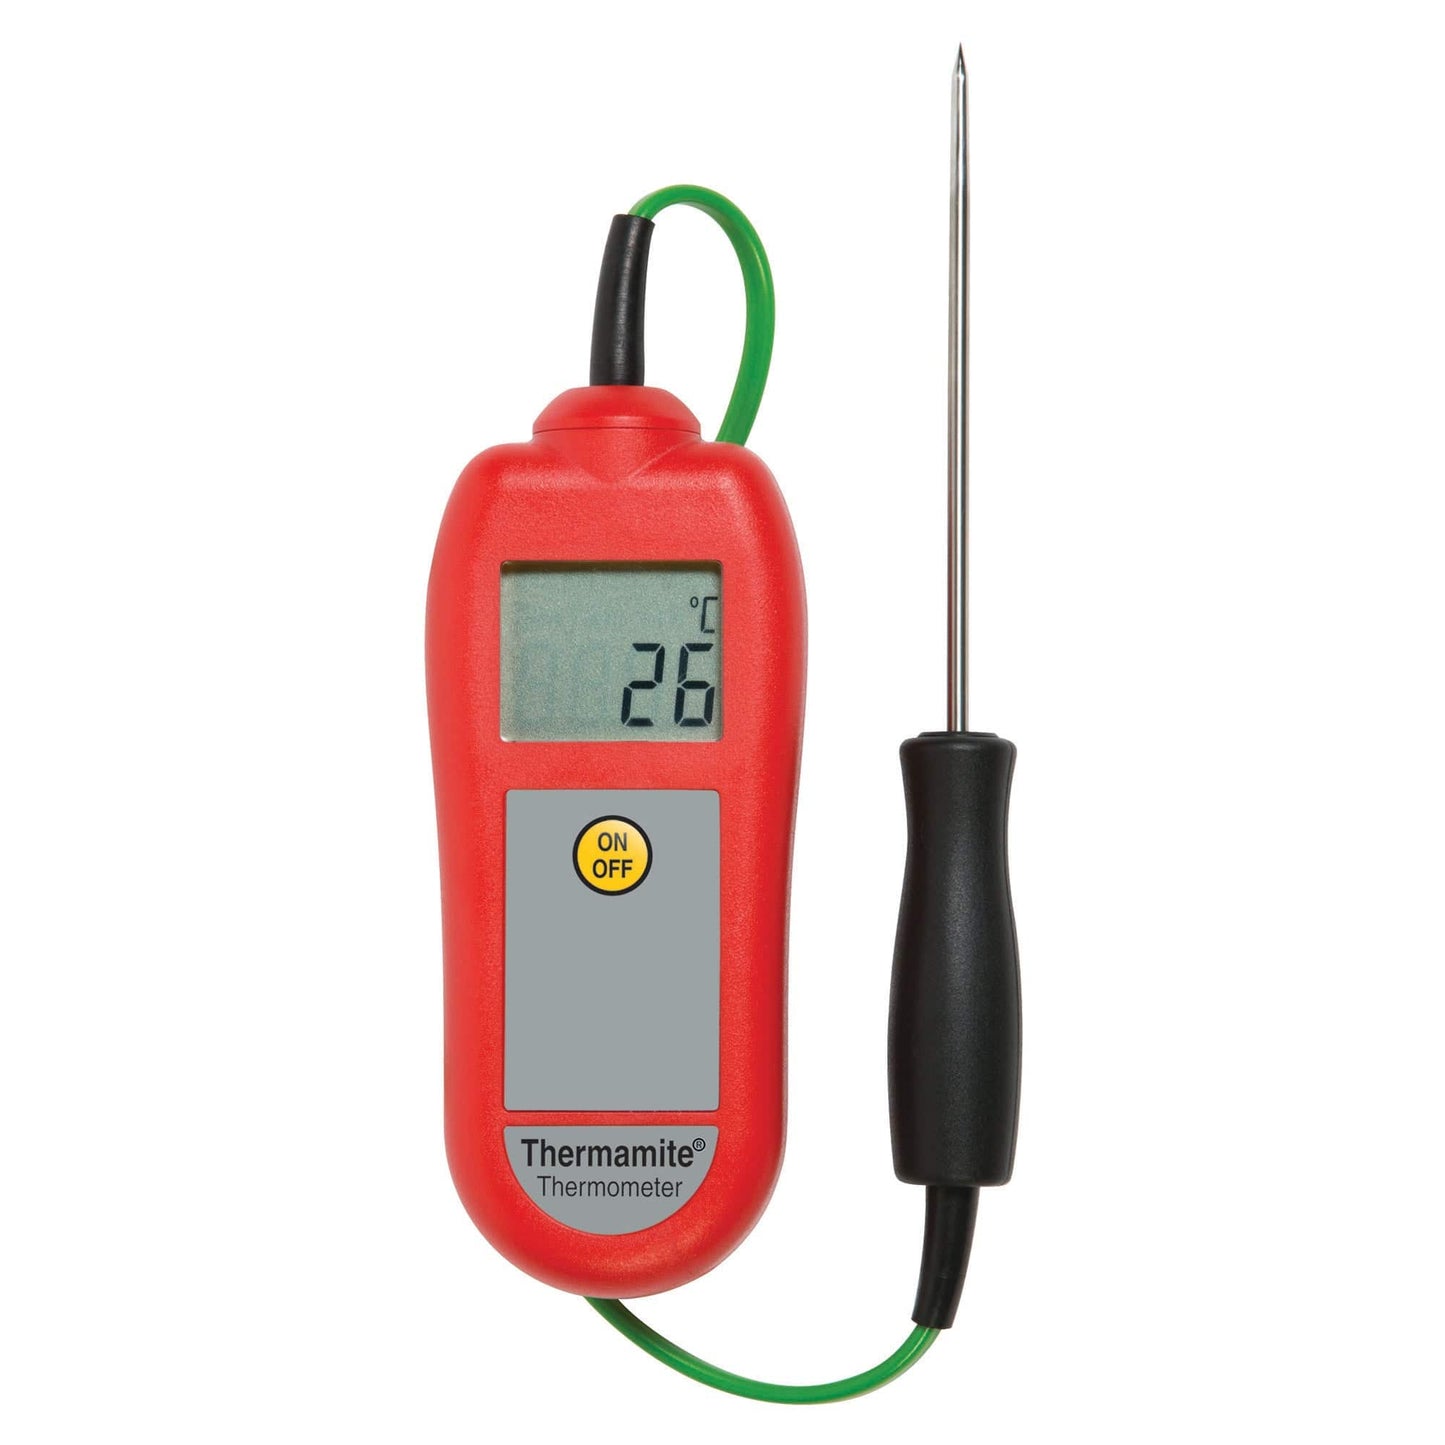 un Thermomètre numérique rouge Thermamite avec sonde alimentaire sur fond blanc de Thermometre.fr.